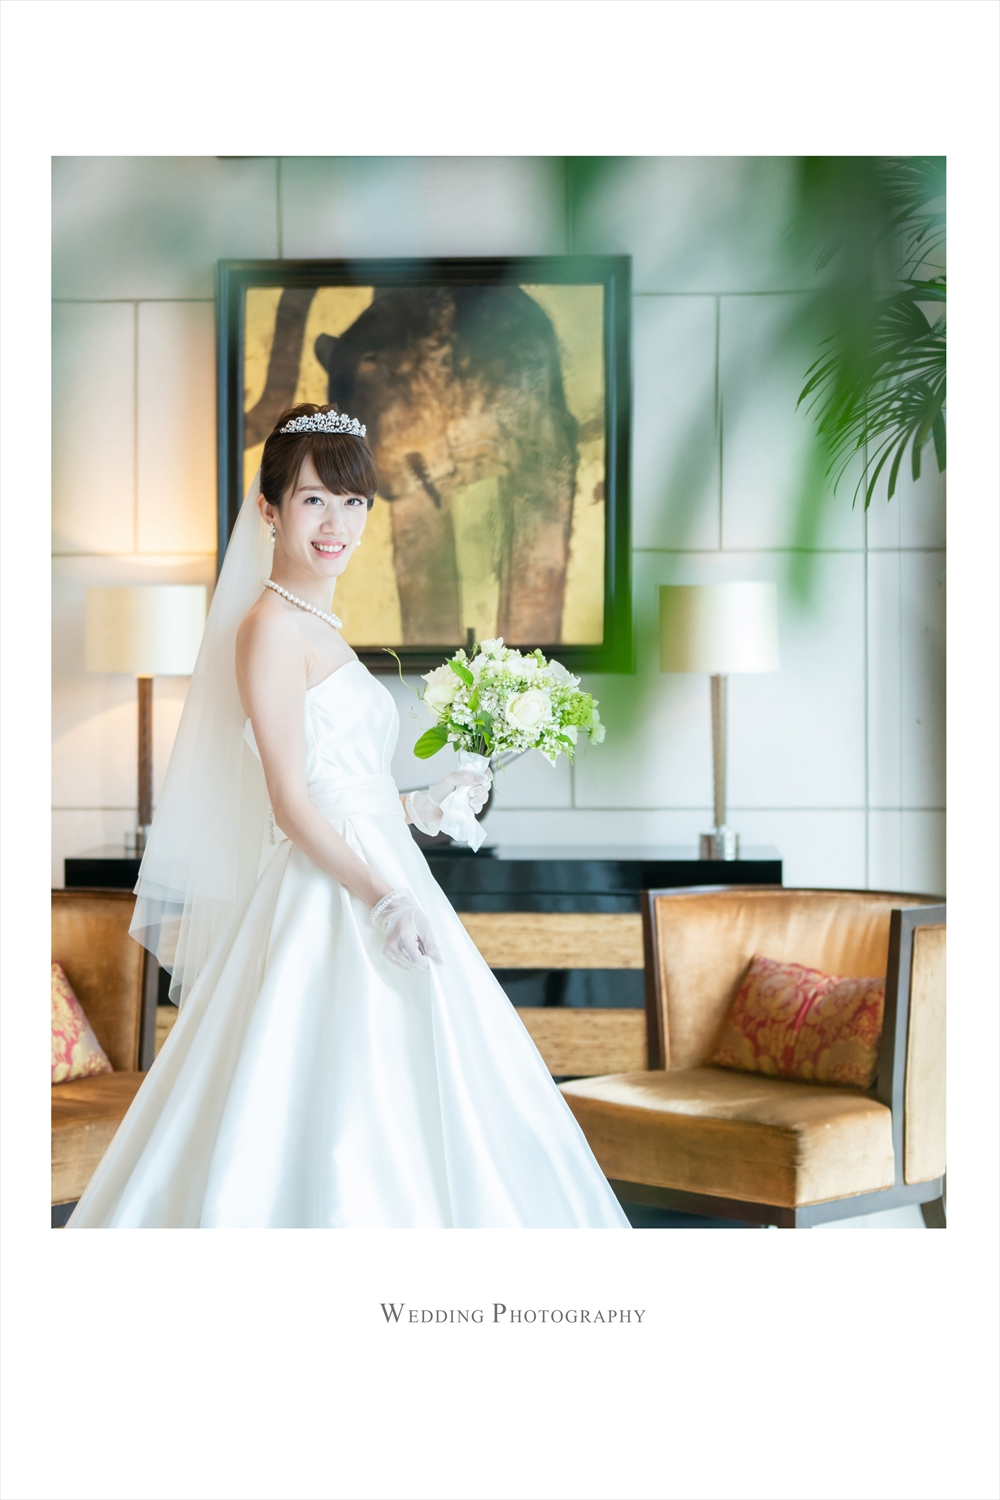 セントレジスホテル大阪での結婚式写真 結婚式ビデオ撮影 写真撮影なら月山映像へ 大阪 神戸 京都